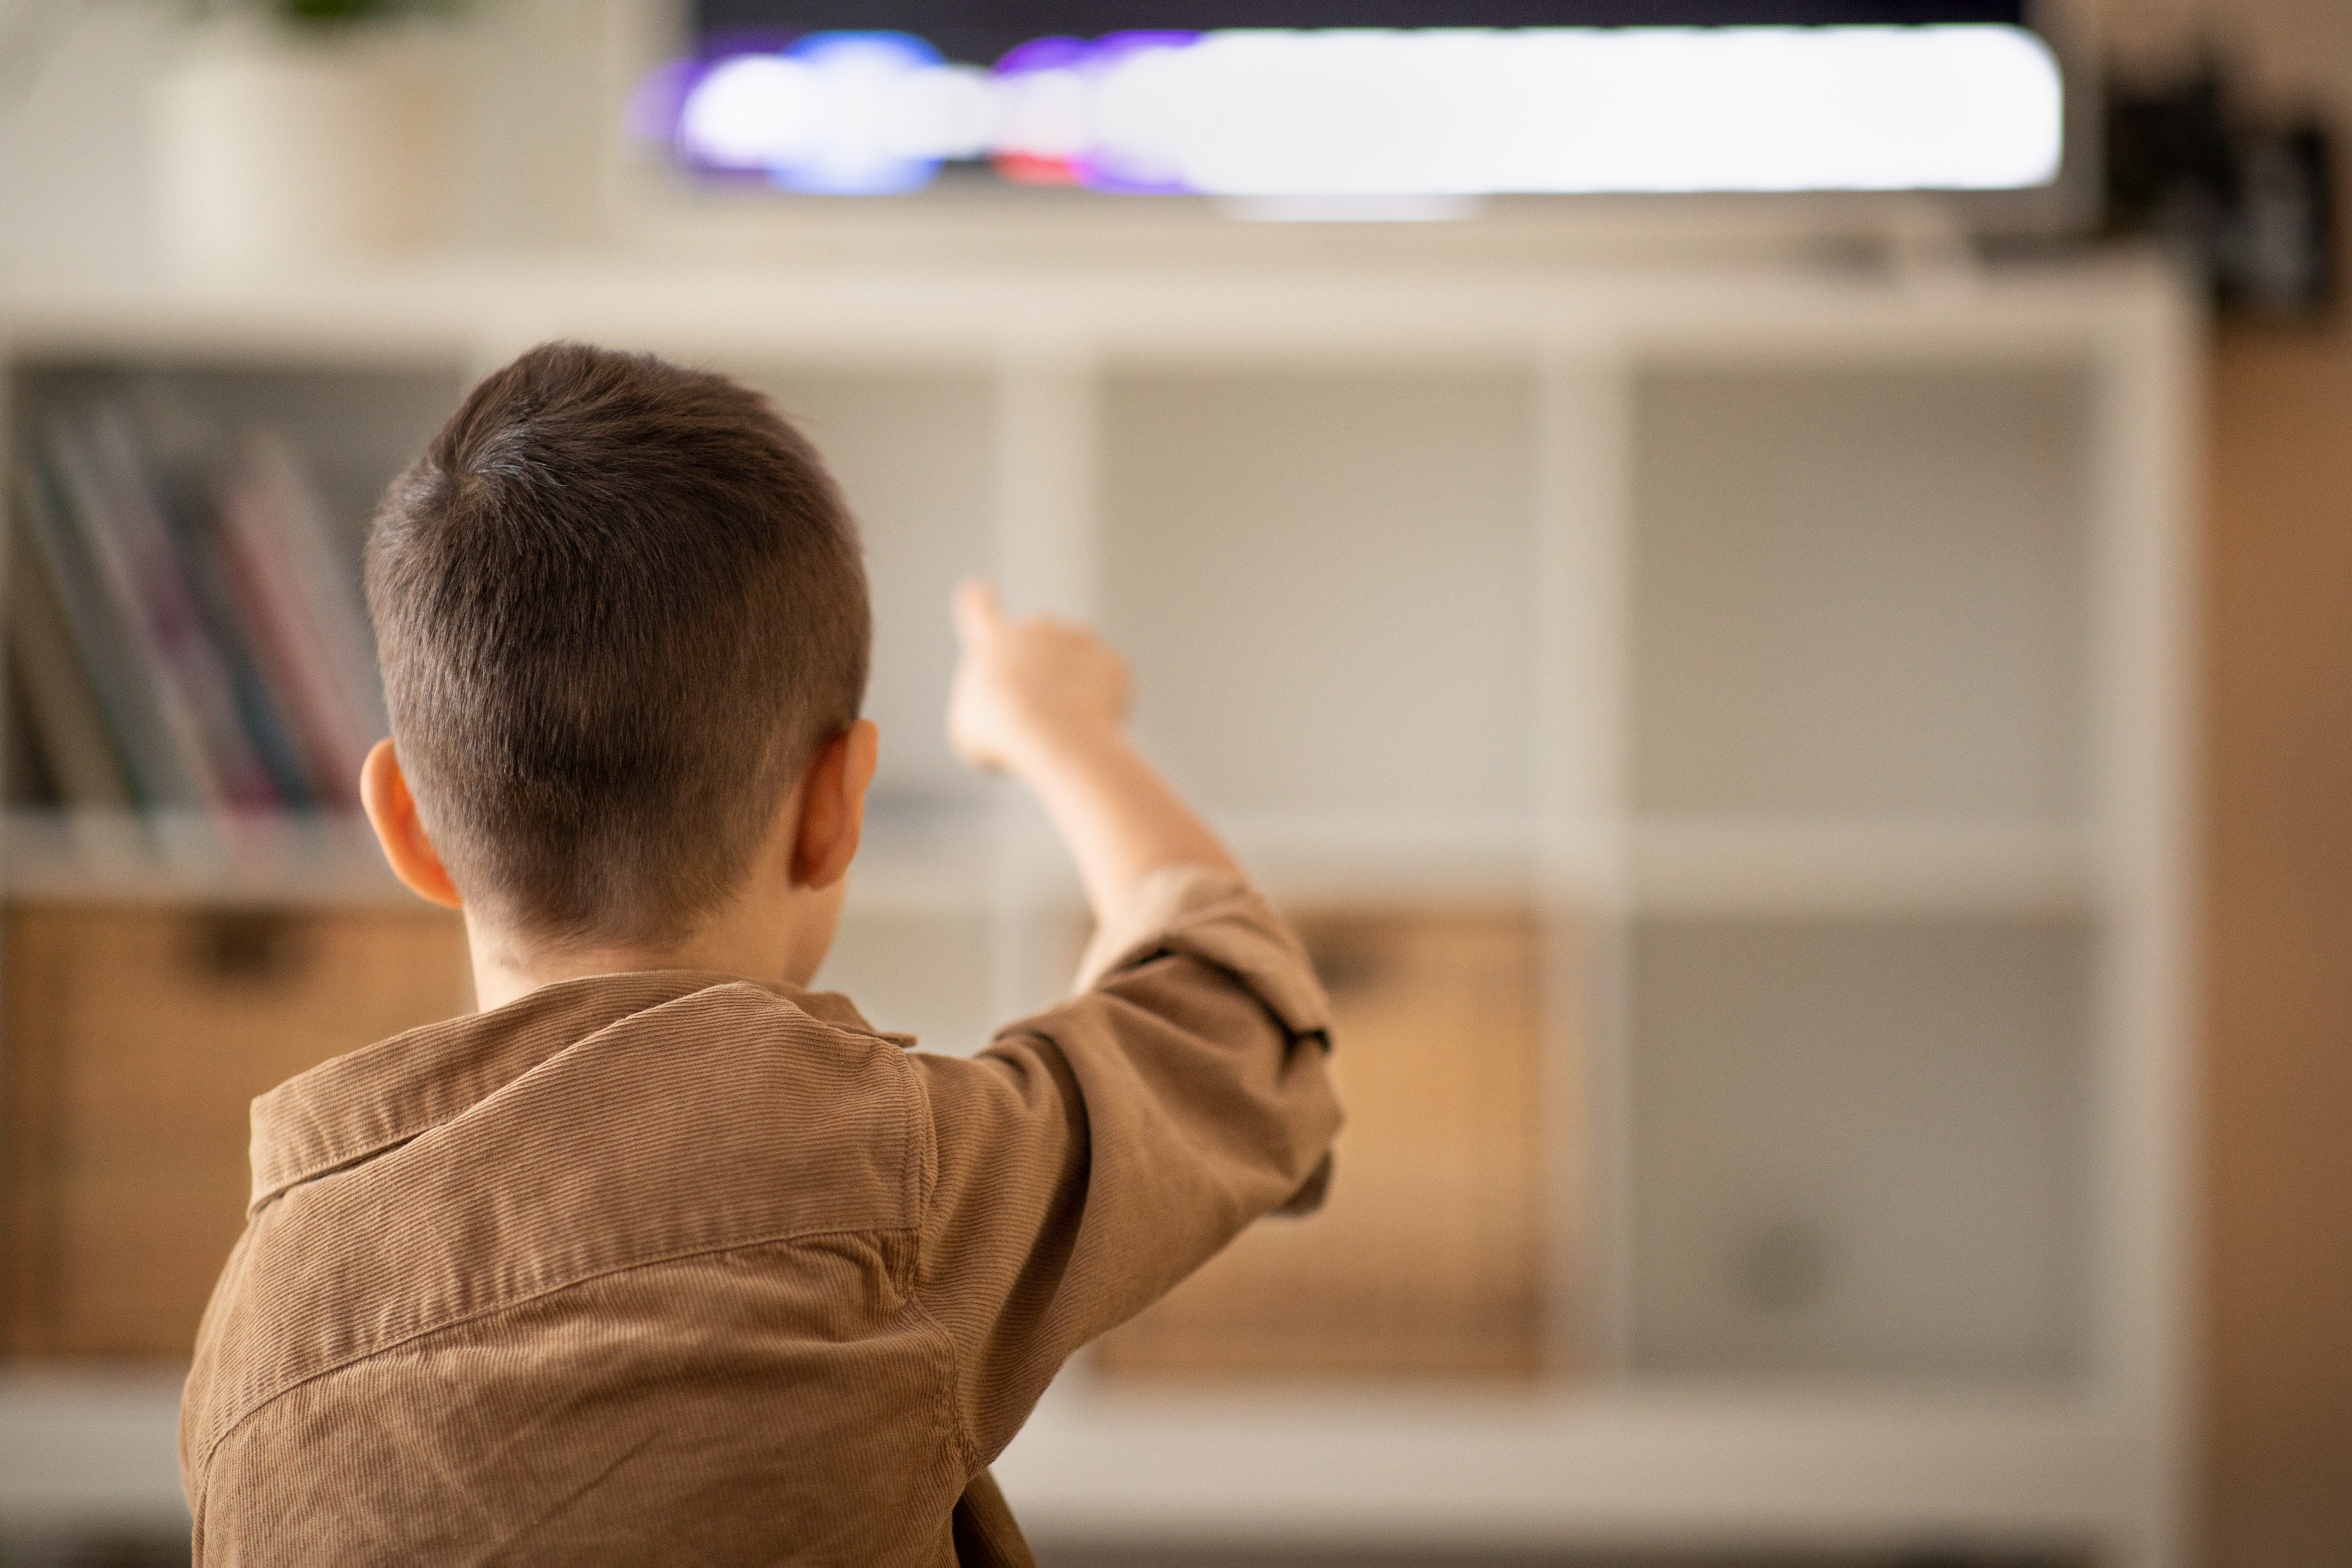 Ein kleiner Junge sieht sich ein Video an und zeigt mit dem Finger auf den Fernseher | Quelle: Shutterstock